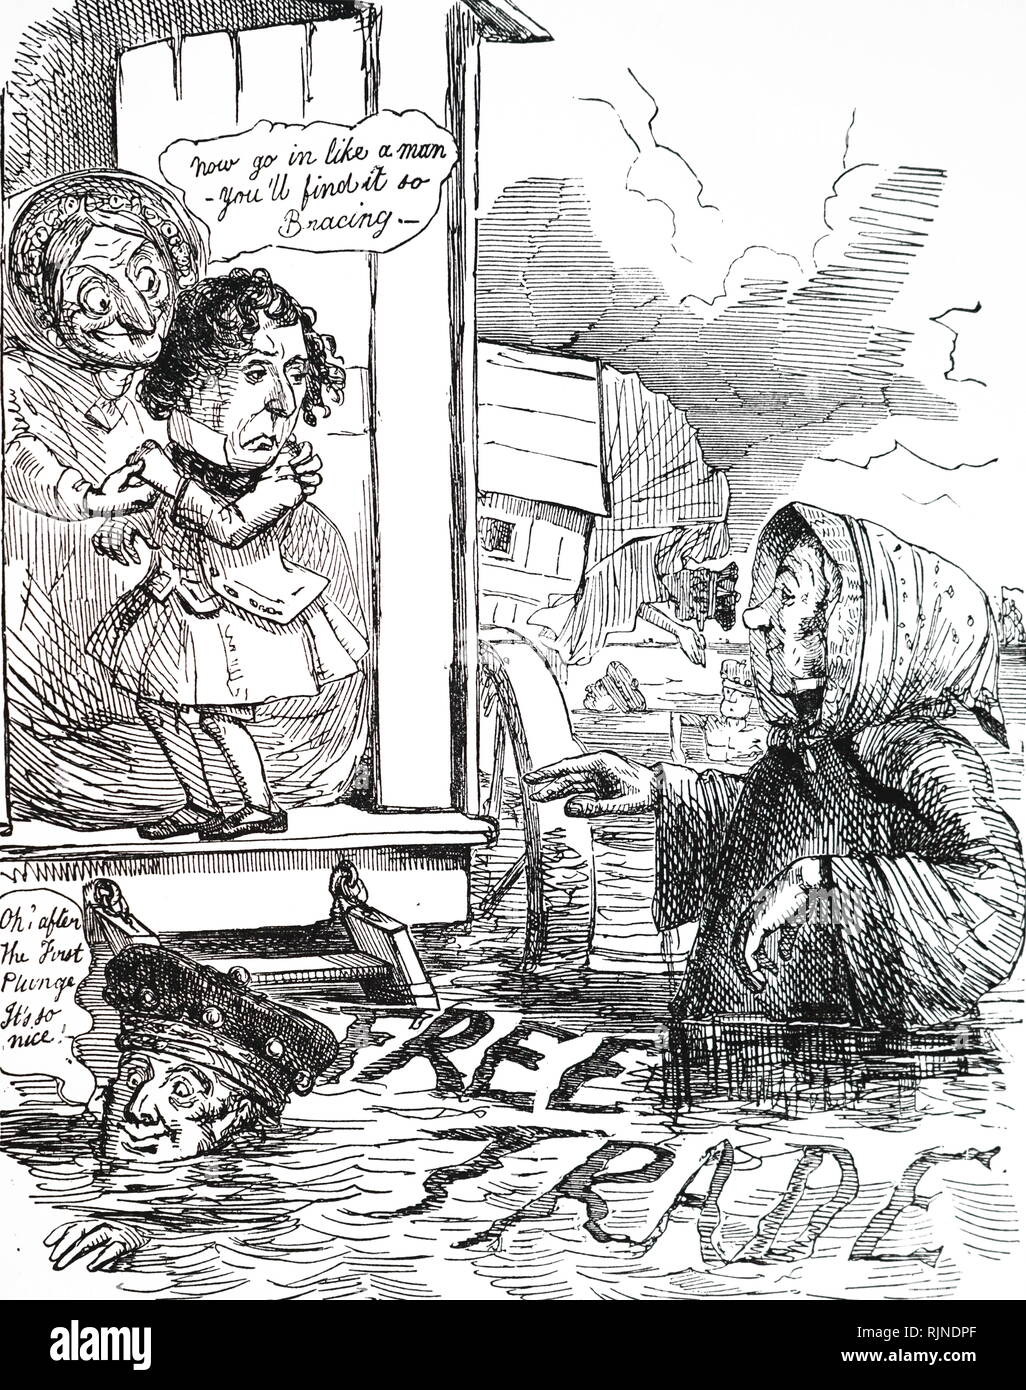 Un cartoon raffiguranti Richard Cobden in attesa di un timido Benjamin Disraeli a prendere il tuffo in favore del libero commercio. Robert Peel (in basso a sinistra) ha già compiuto il salto e ha ritenuto che esso non è così male come aveva previsto. Illustrato da John Leech. Foto Stock